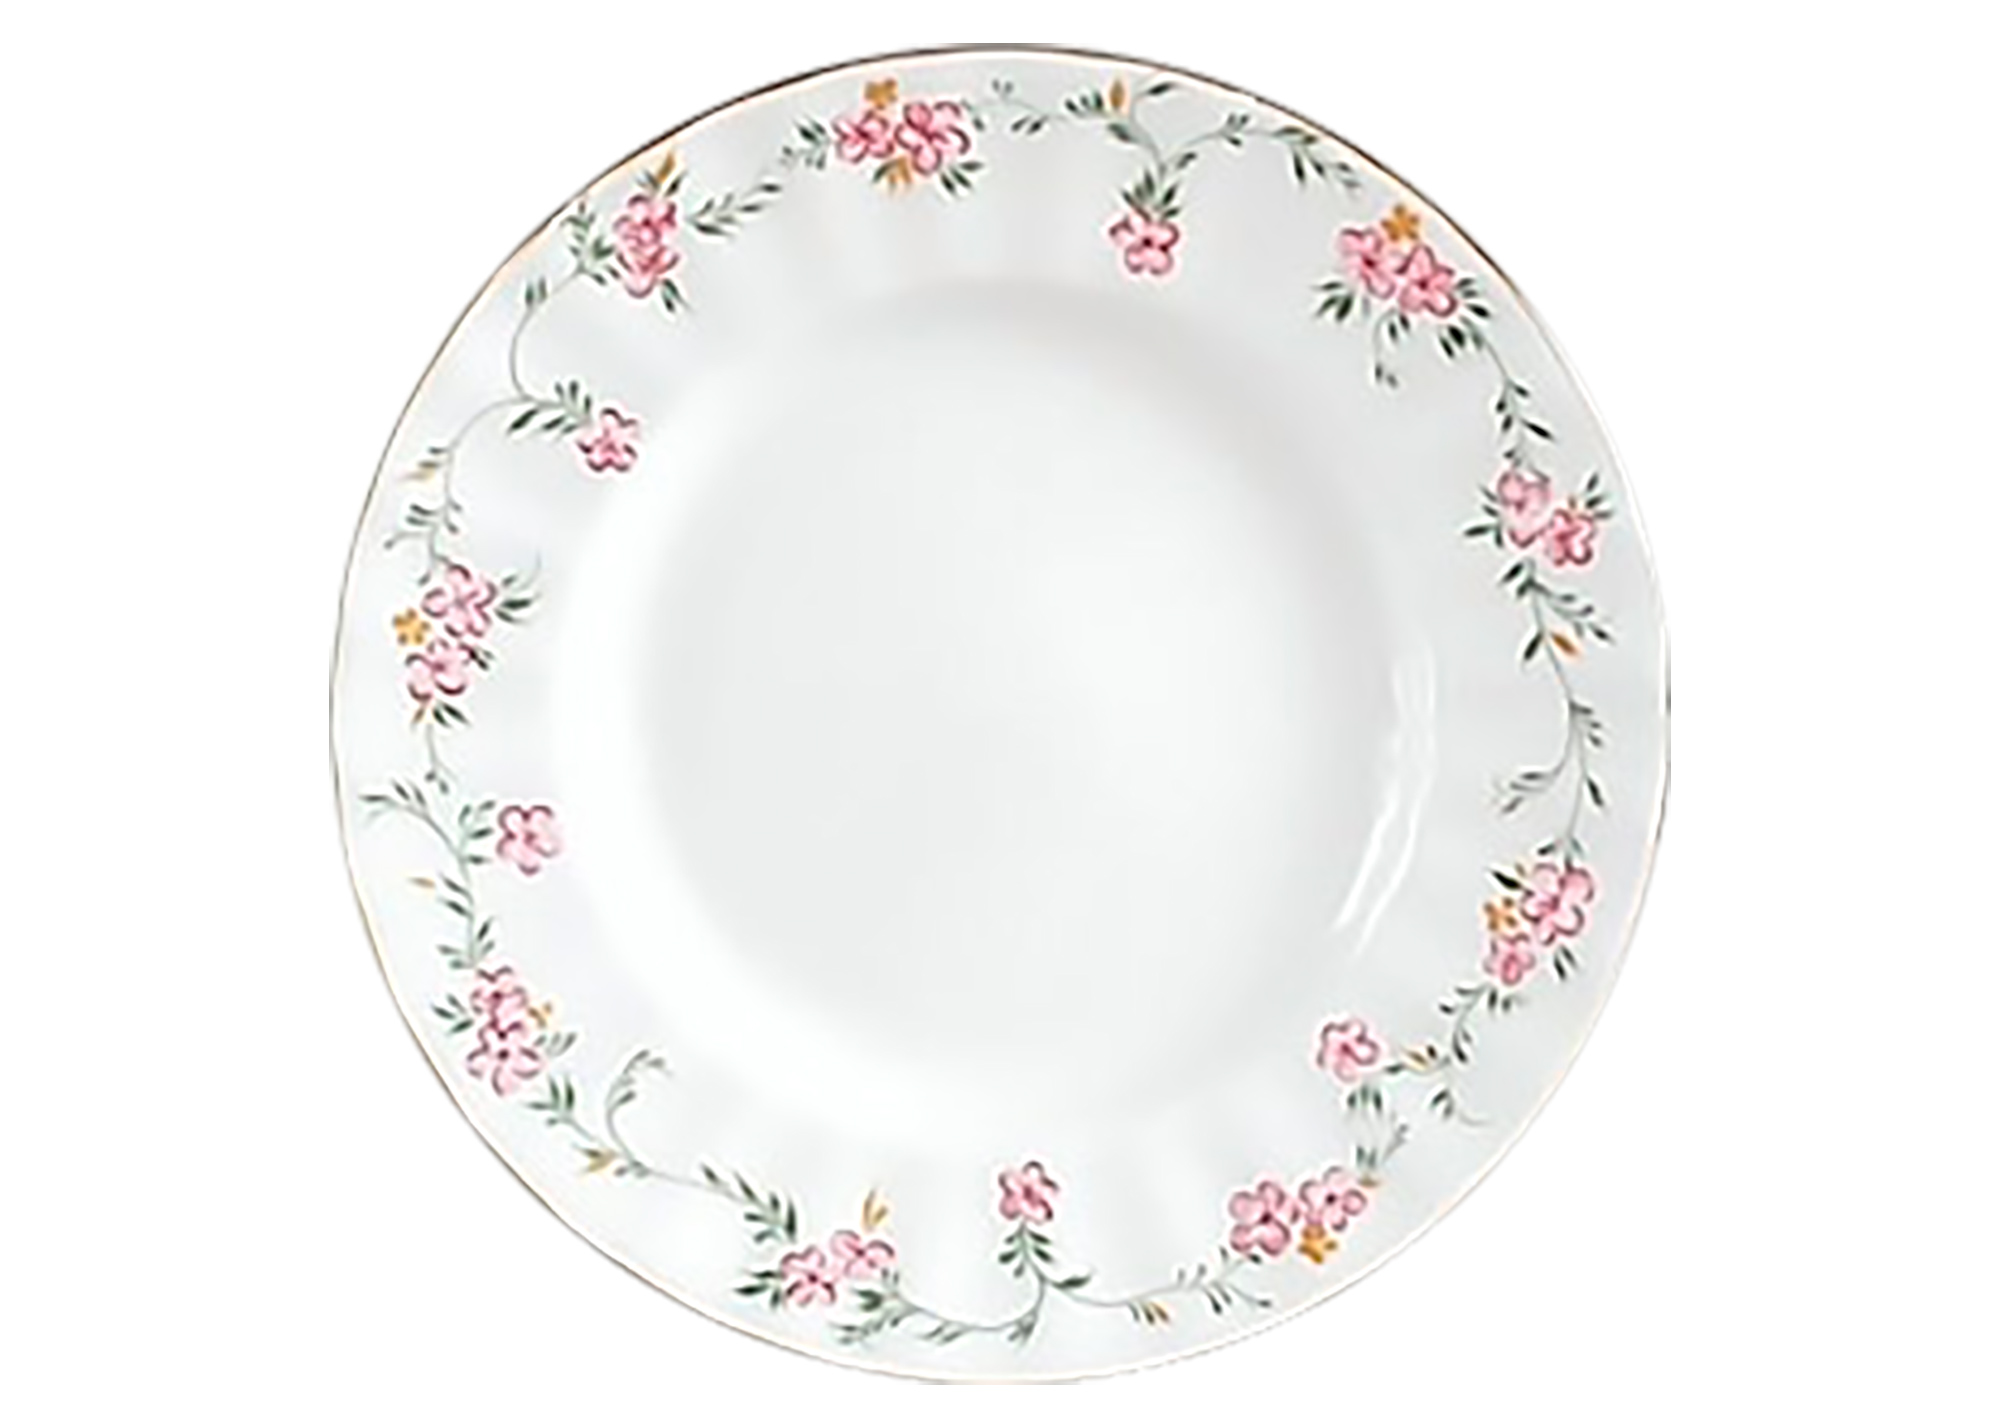 Buy Victorian Pattern Dessert Plate, 7' at GoldenCockerel.com